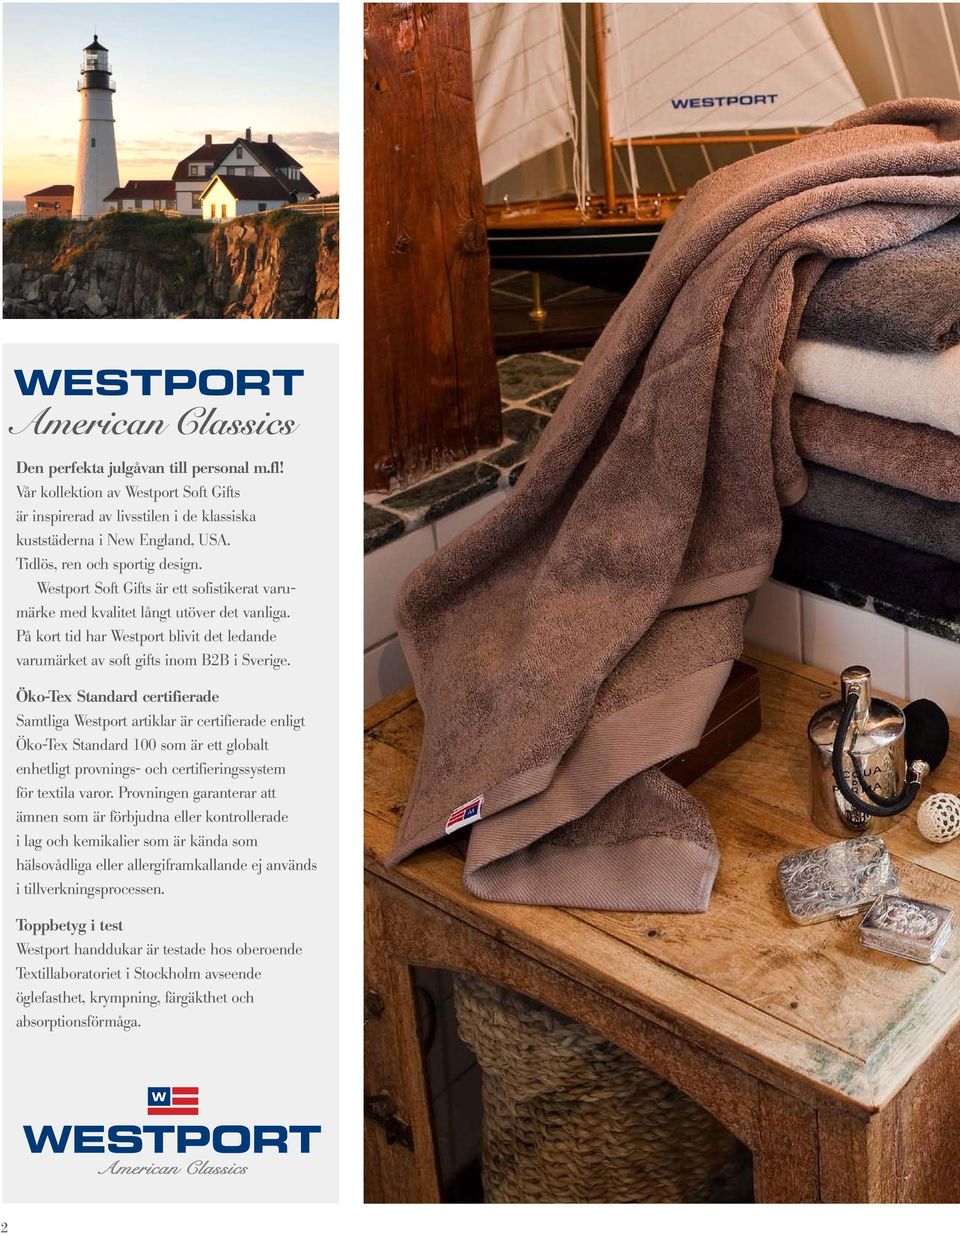 På kort tid har Westport blivit det ledande varumärket av soft gifts inom B2B i Sverige.